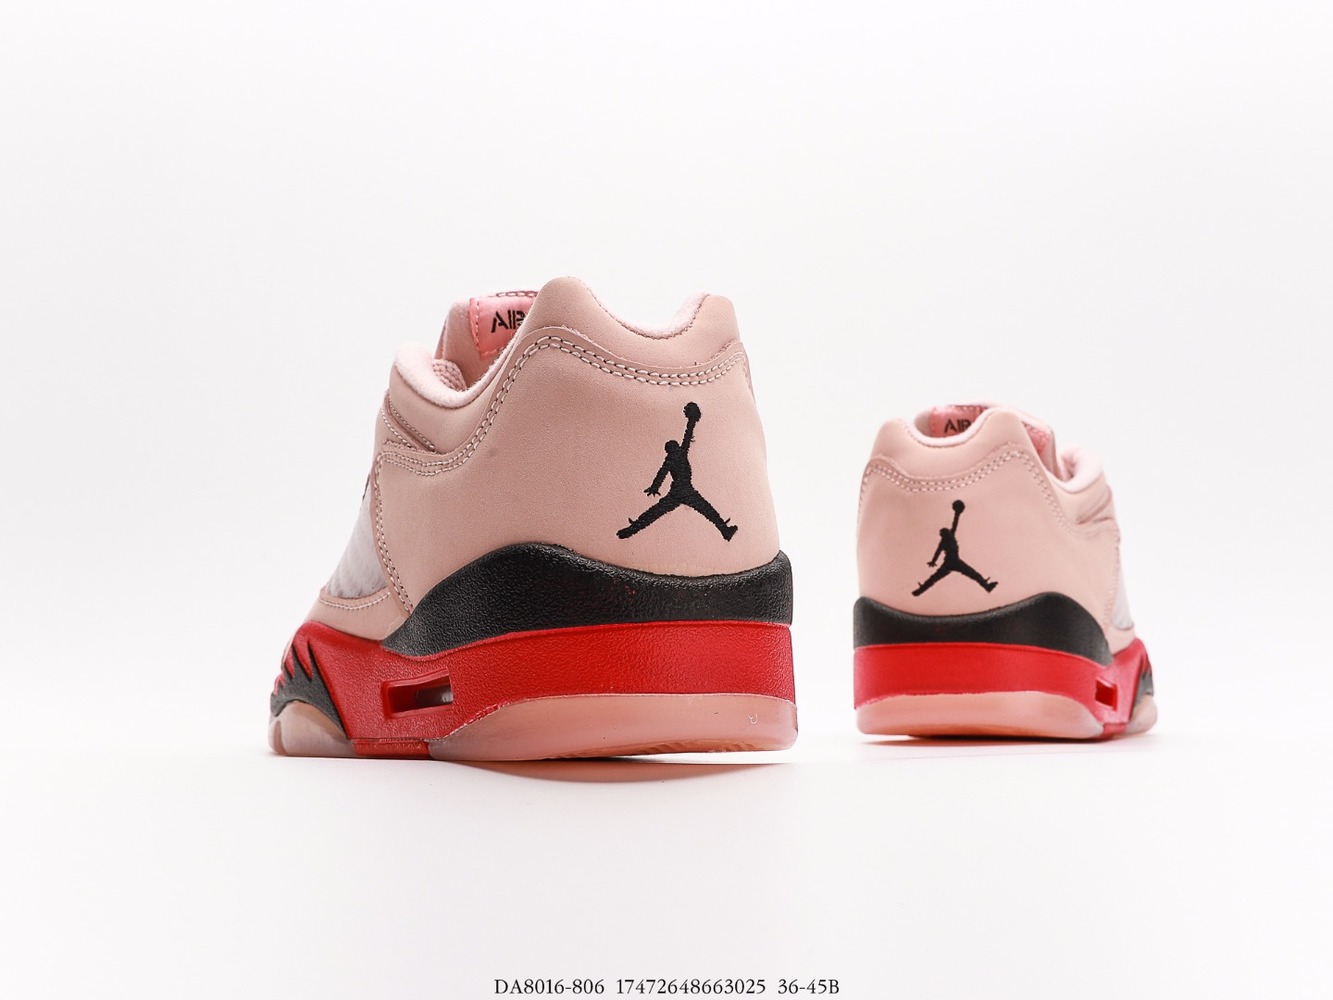 Air Jordan 5 Low Girls That Hoop_DA8016-806